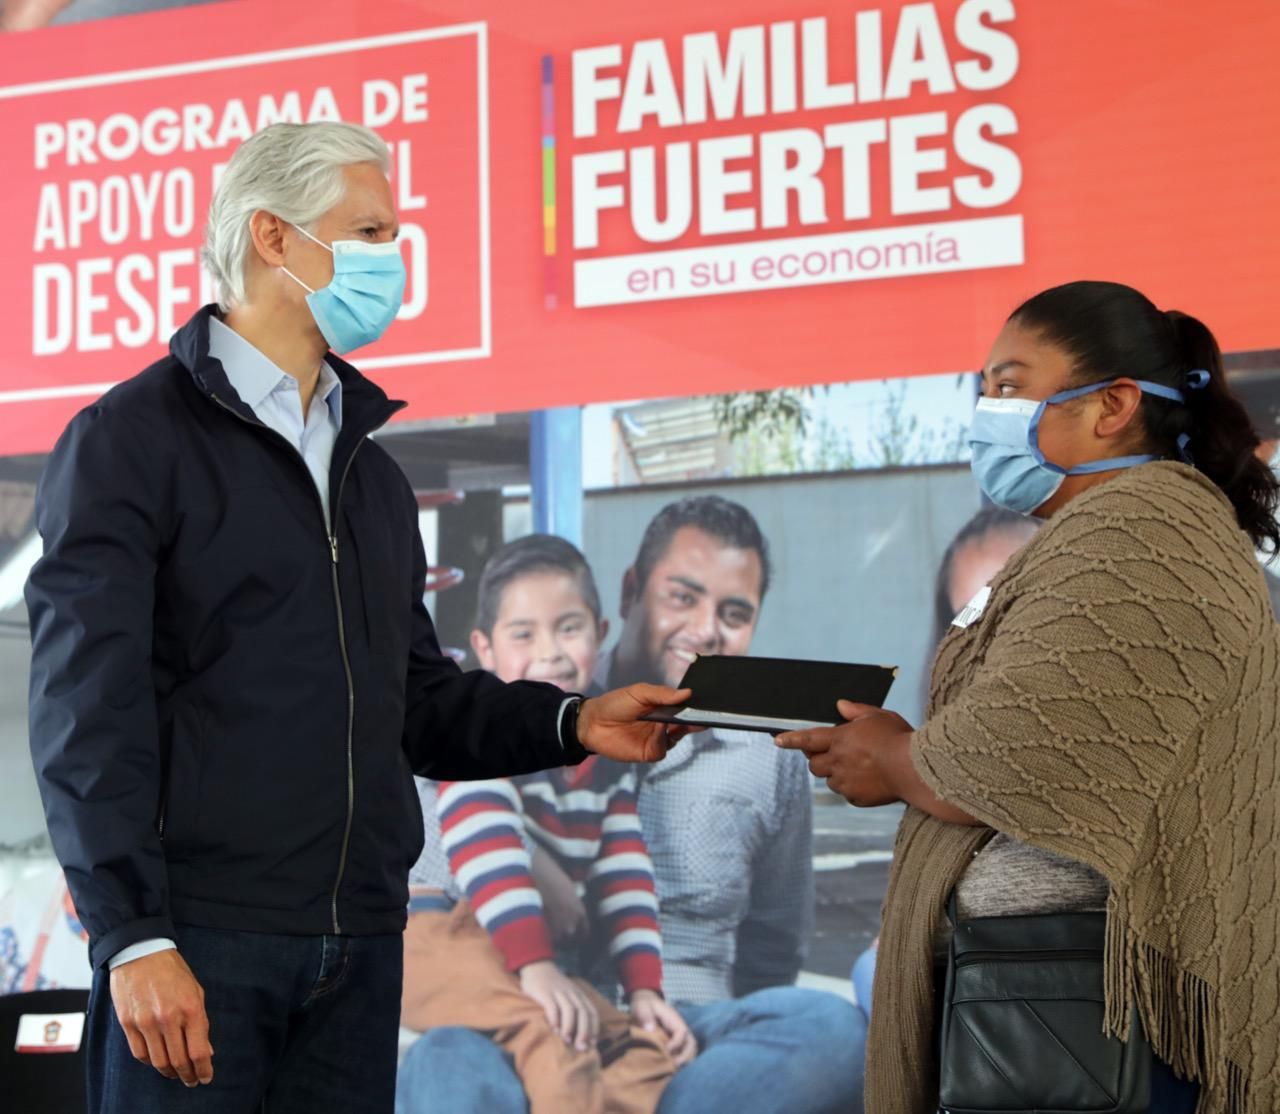 Permite Programa de apoyo para el desempleo reactivar economía familiar afectada por la pandemia: Alfredo del Mazo 